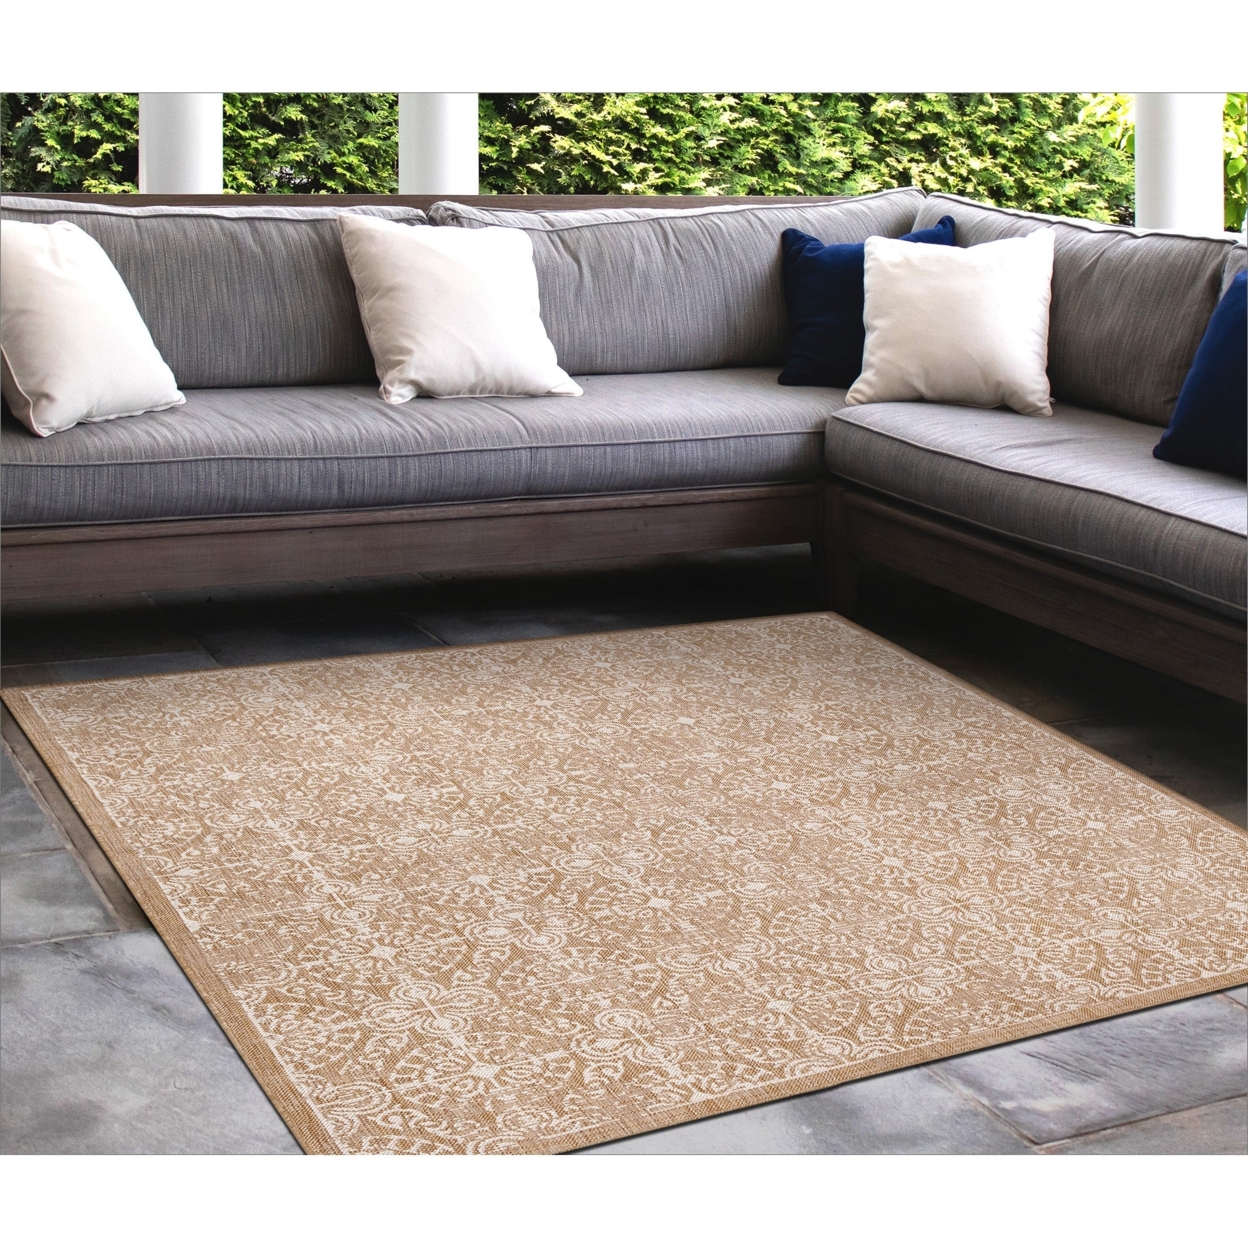 Liora Manne Carmel Antique Tile Indoor Outdoor Area Rug Sand - 6'6 X 9'4